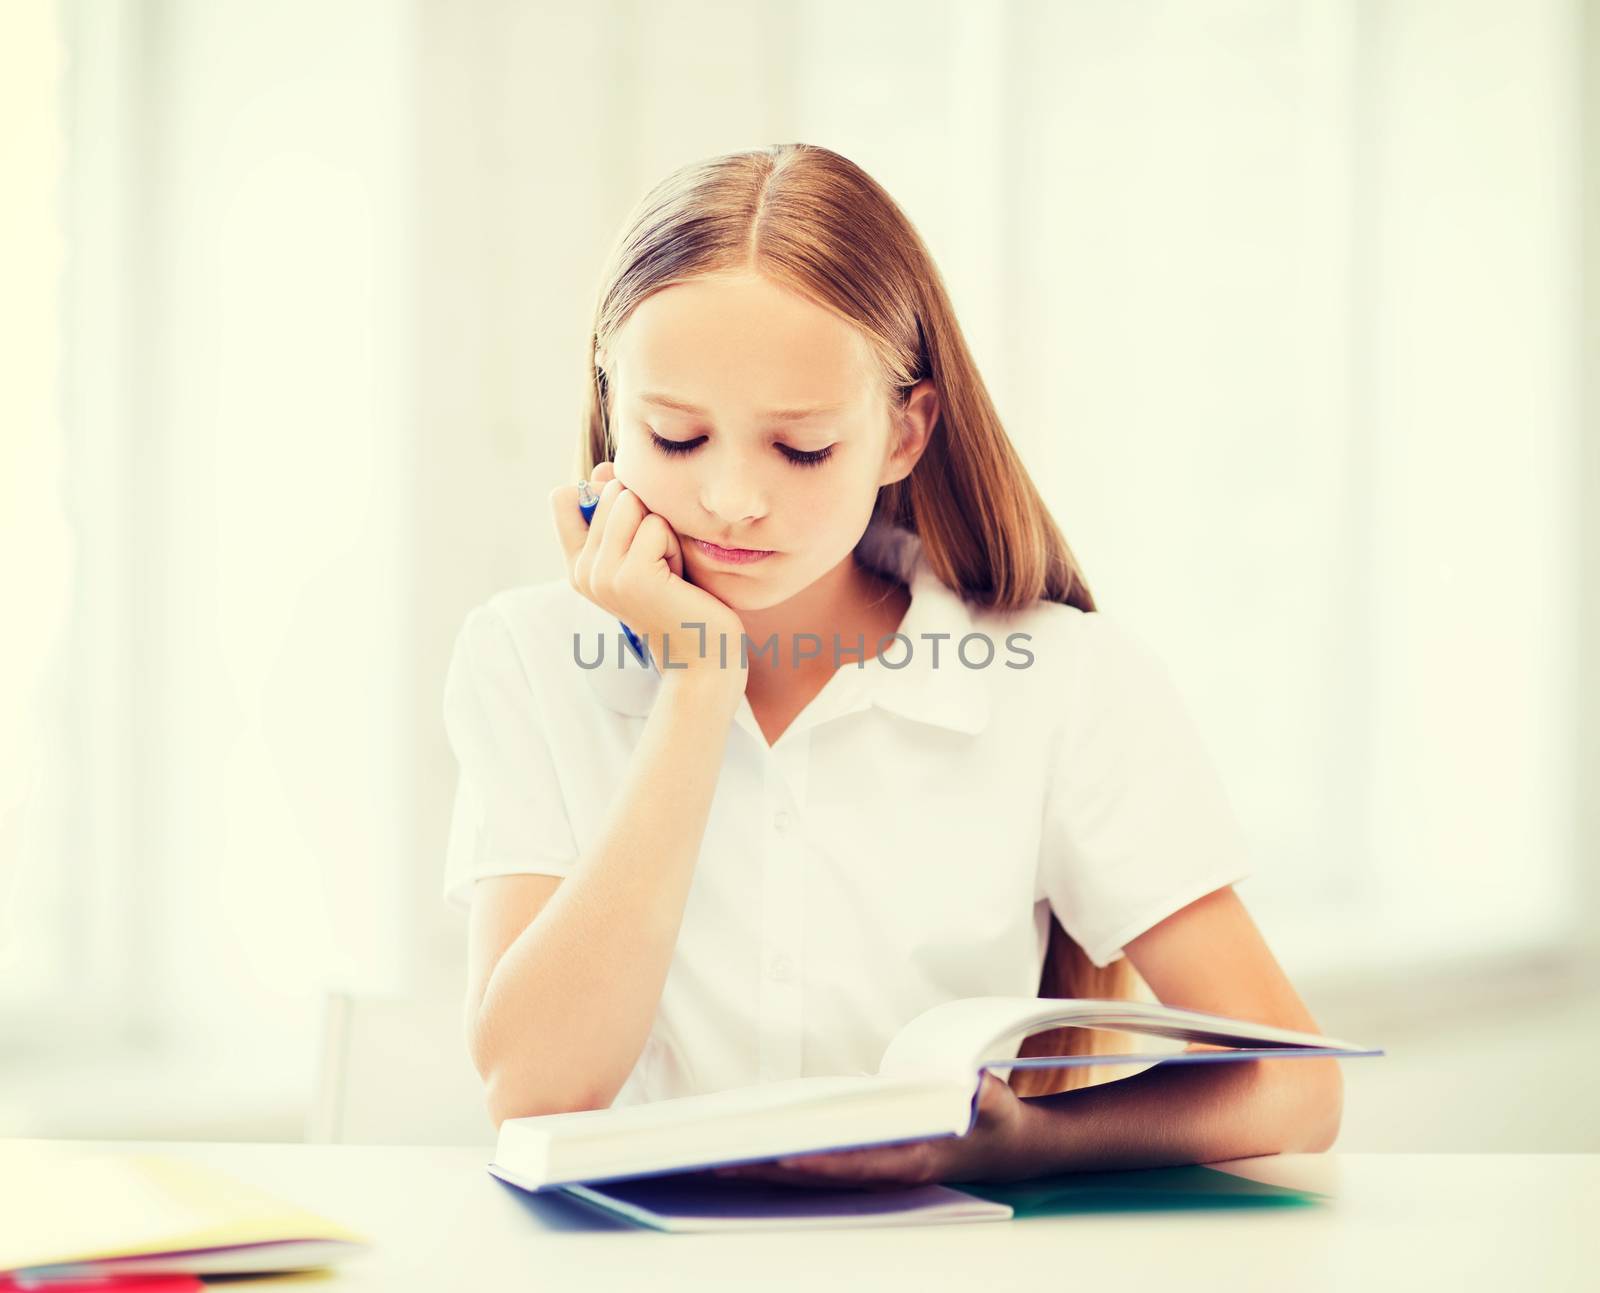 student girl studying at school by dolgachov